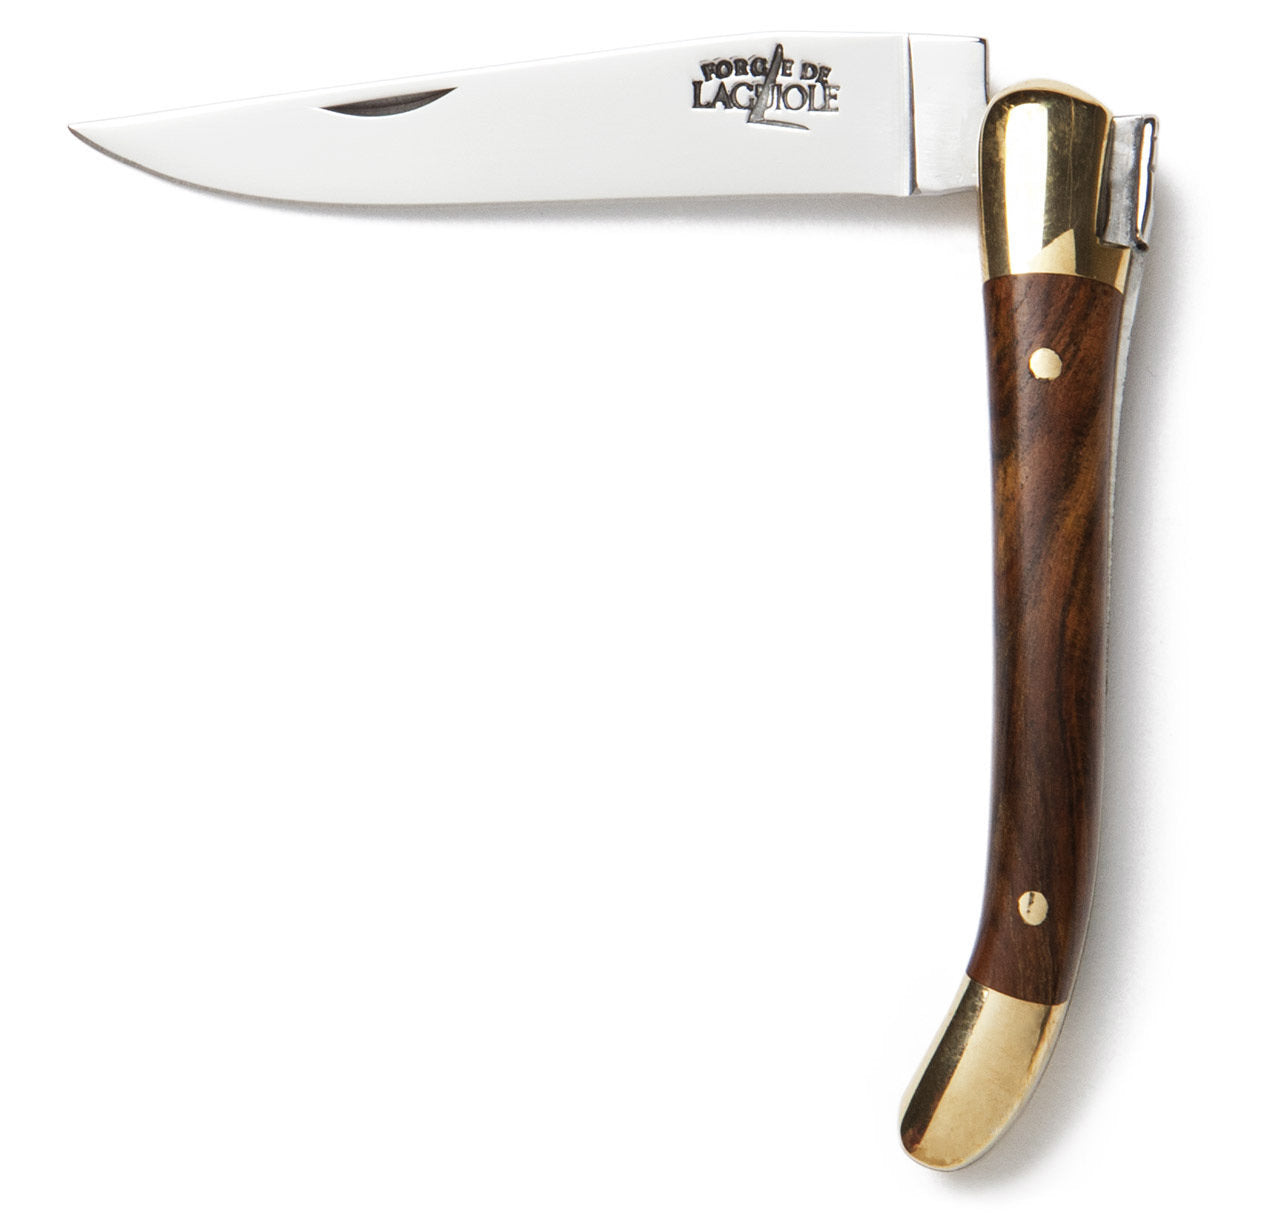 Laguiole 7cm Pocketknife in Pistachio